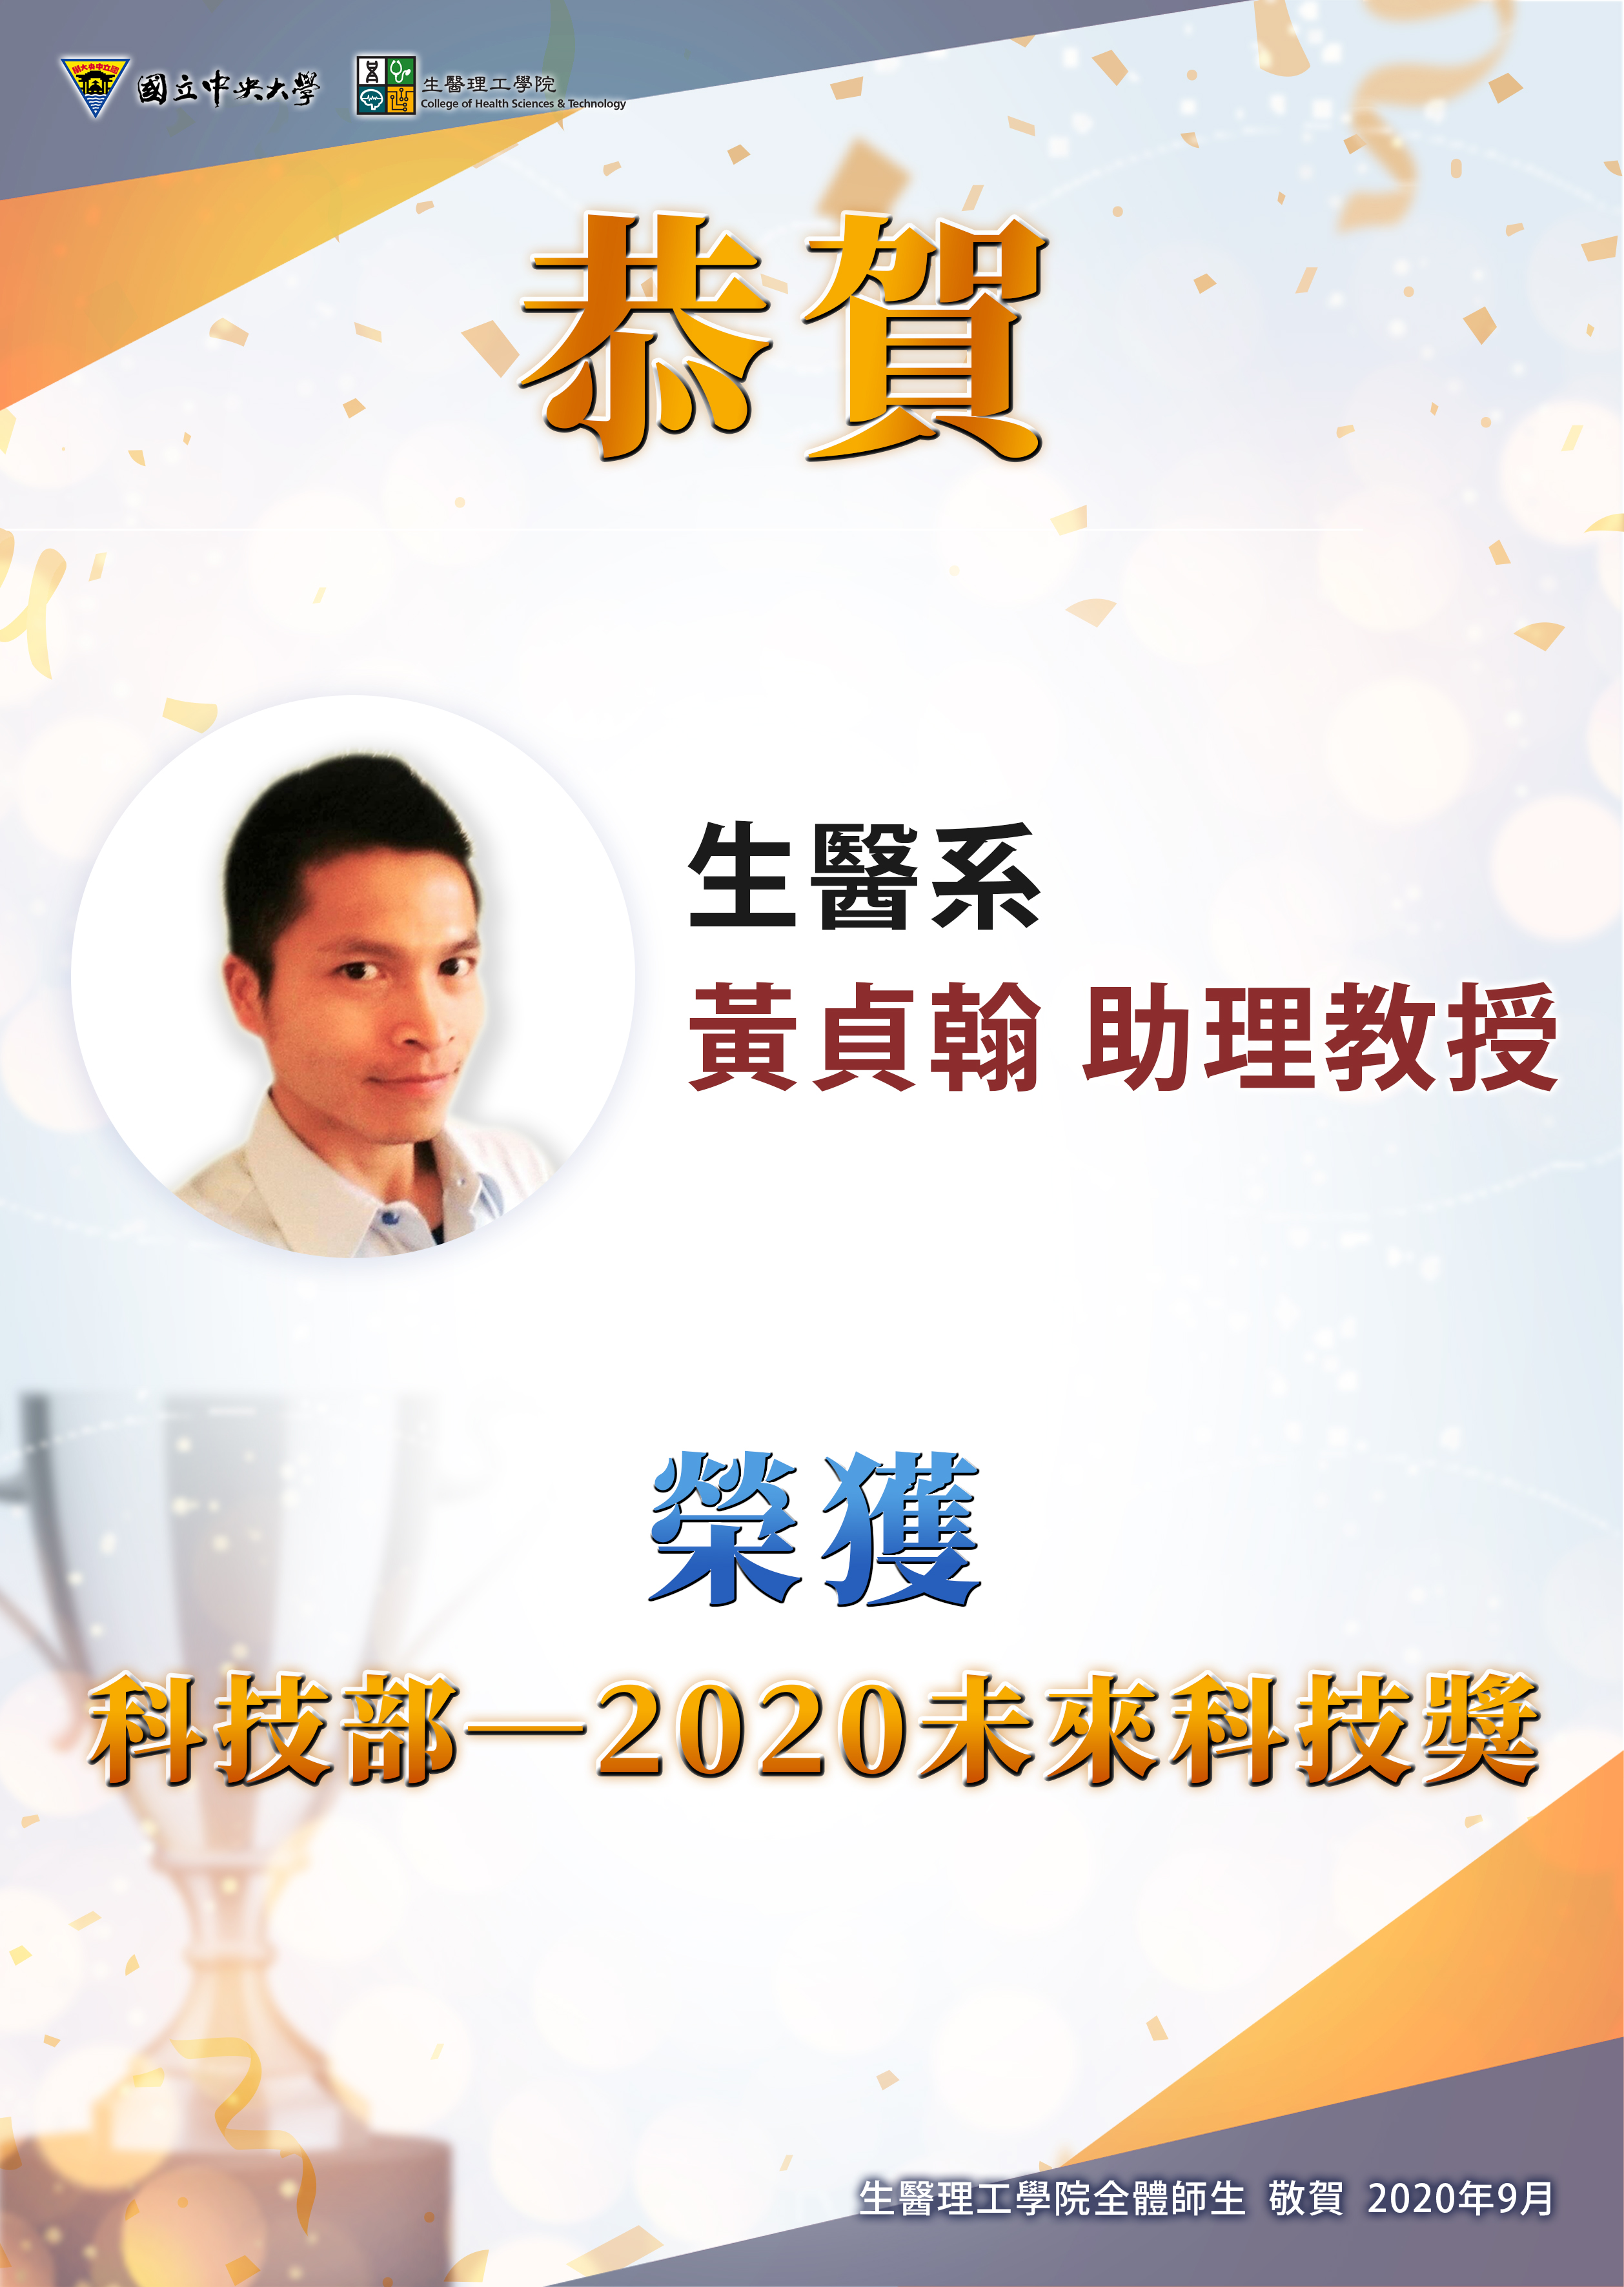 【恭賀】恭賀生醫系黃貞翰助理教授 榮獲「科技部-2020未來科技獎」